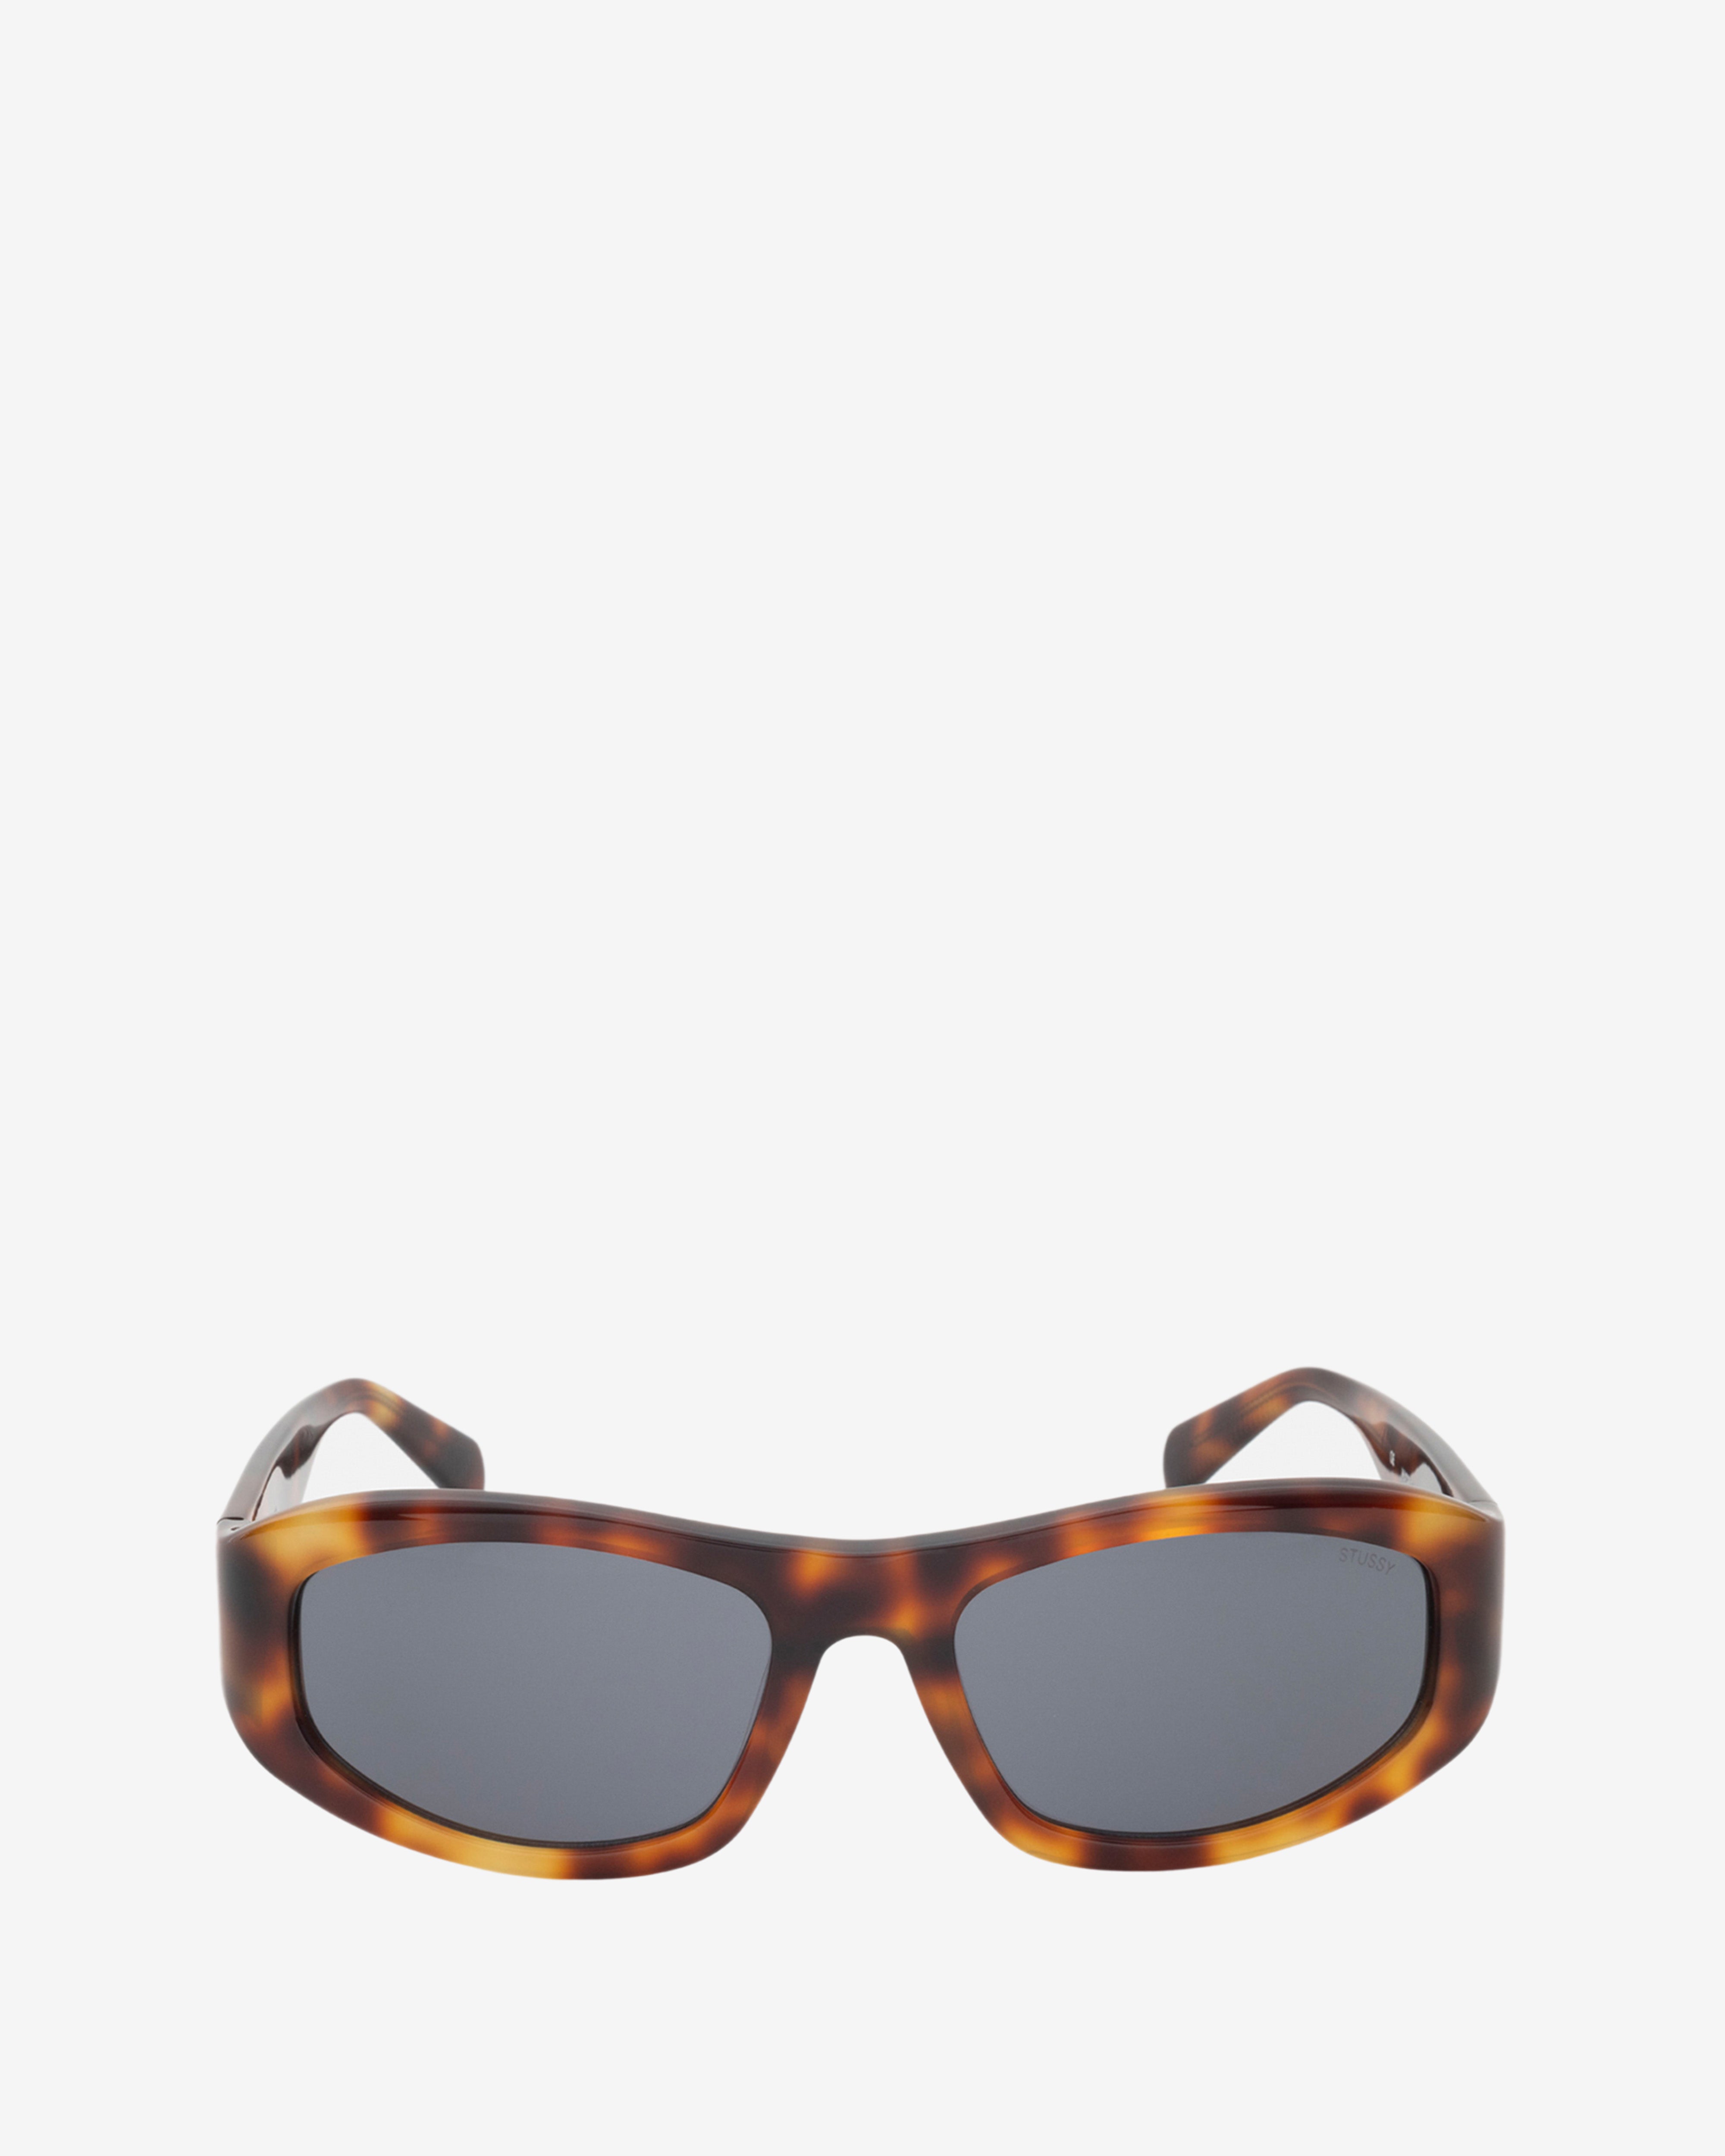 Stüssy - Landon Sunglasses - (Tortoise/Black) | Dover Street 